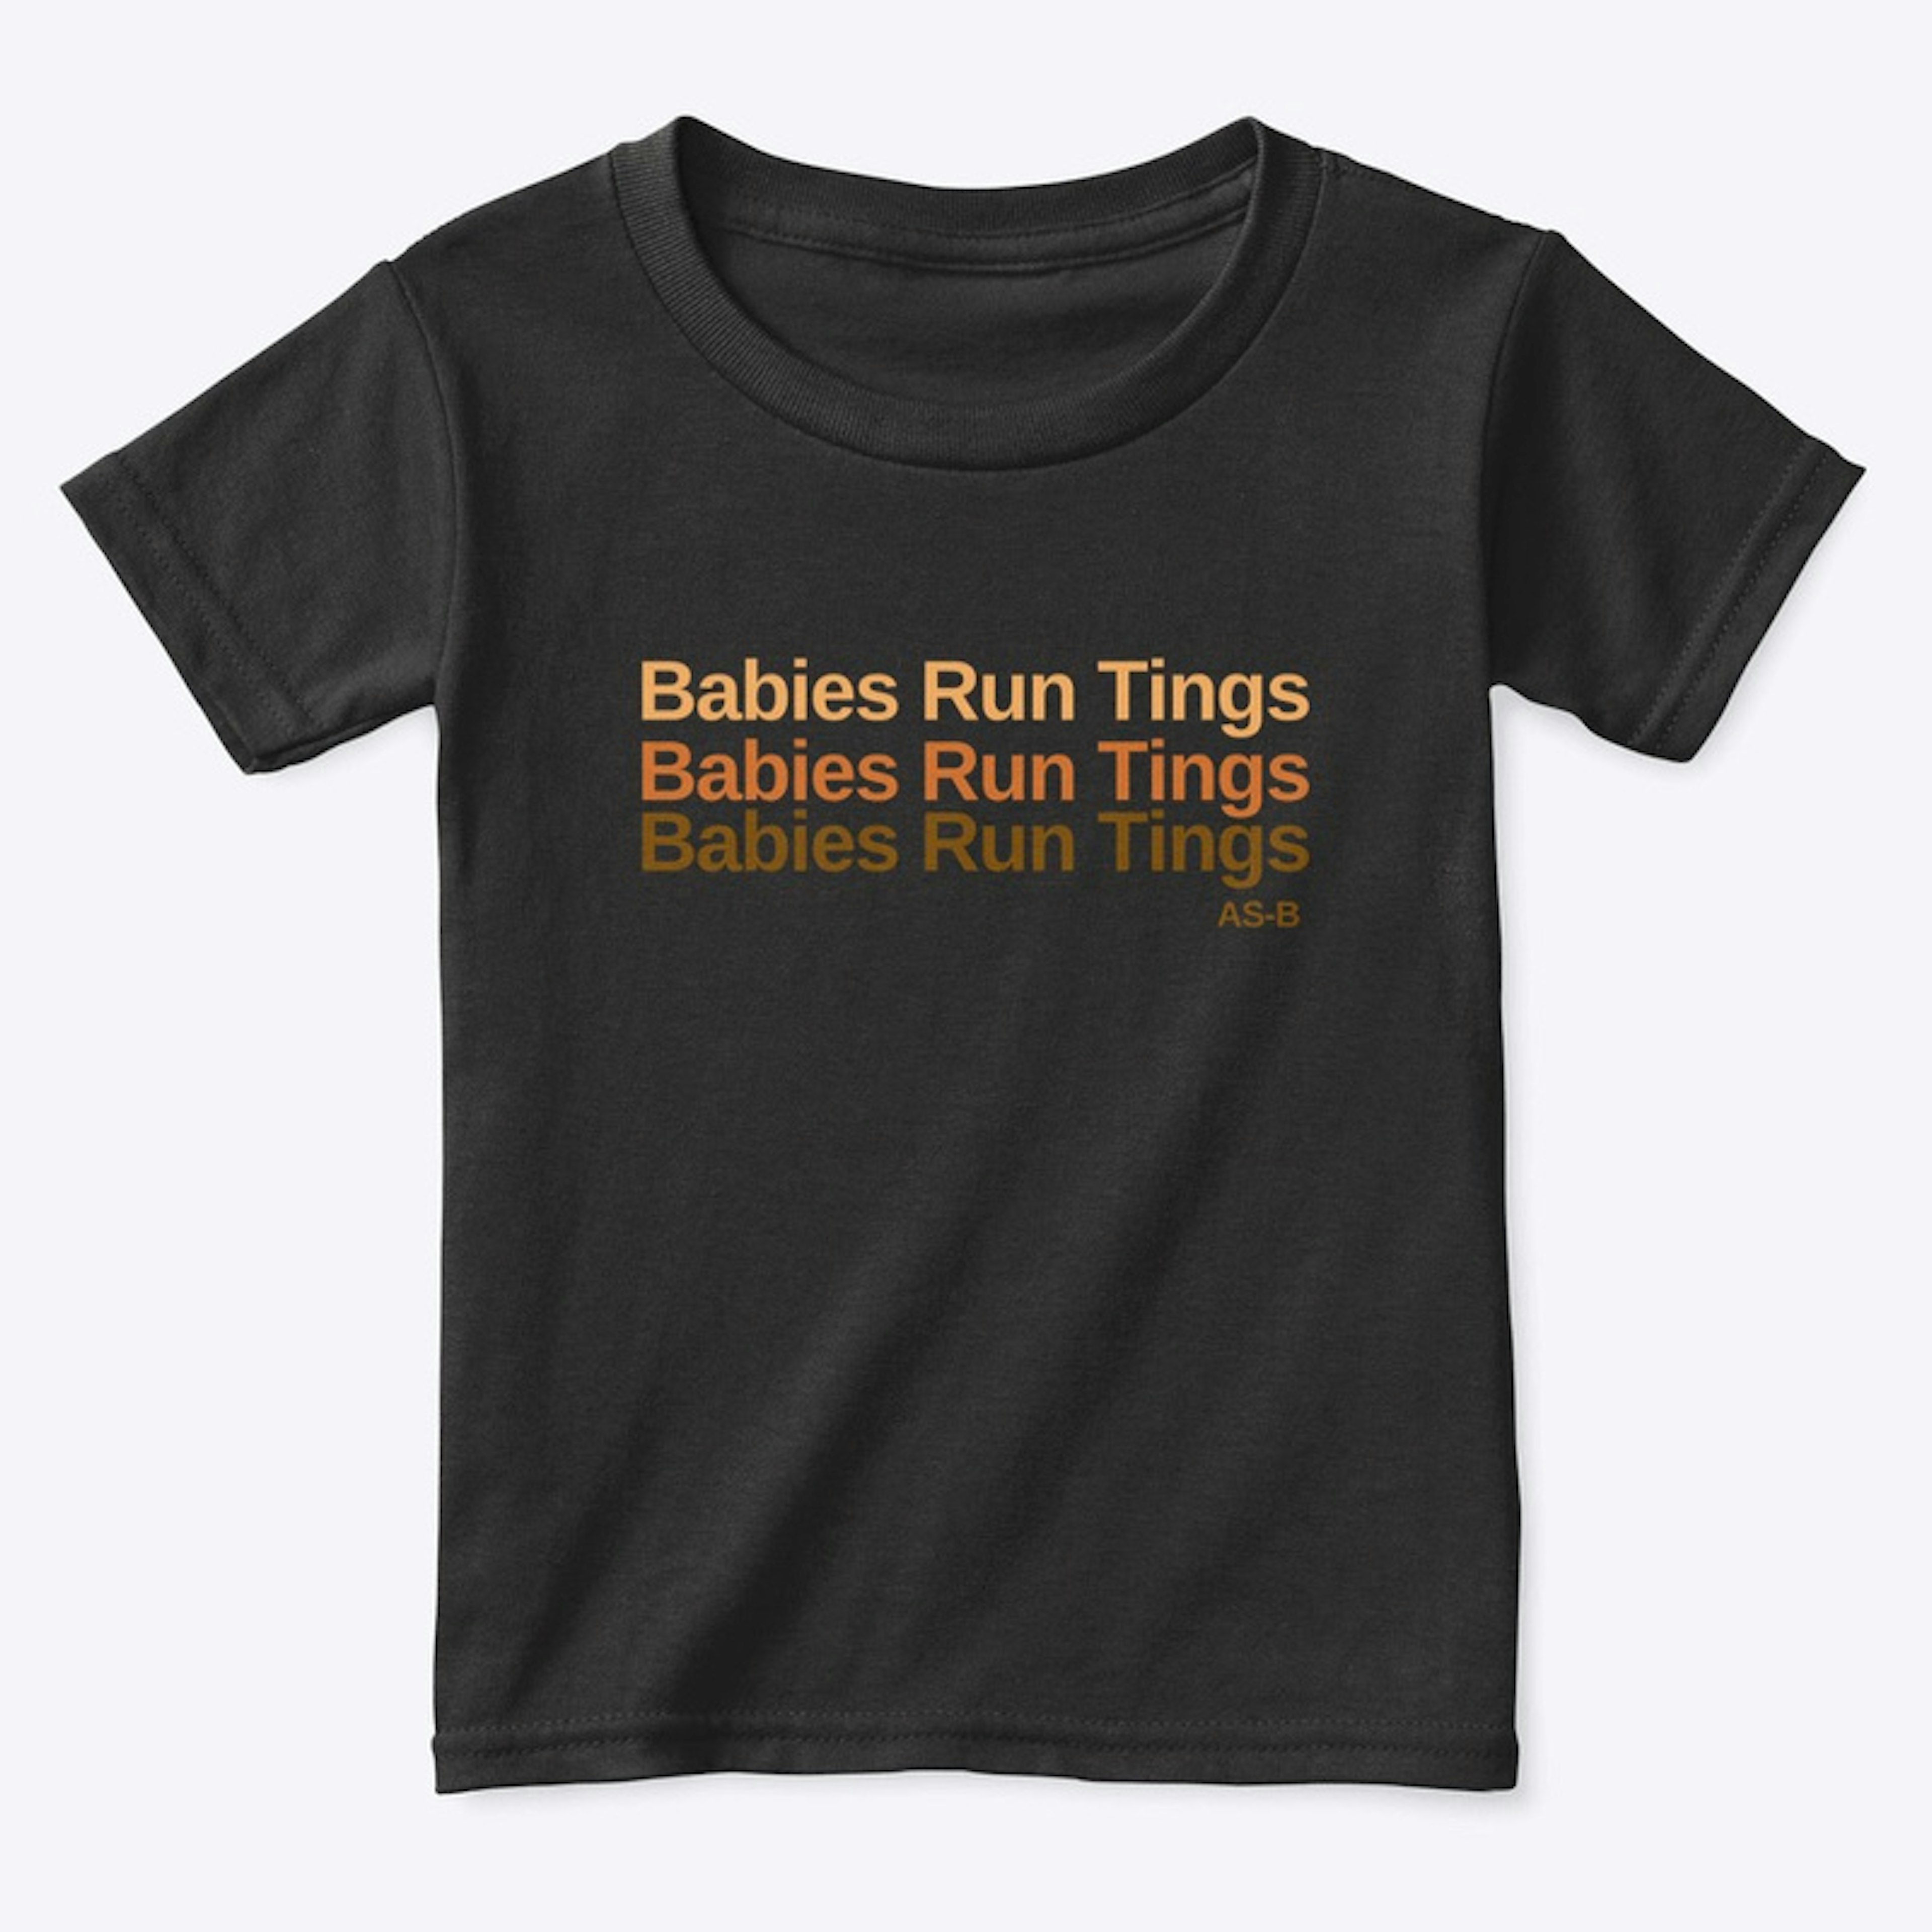 Babies run tings